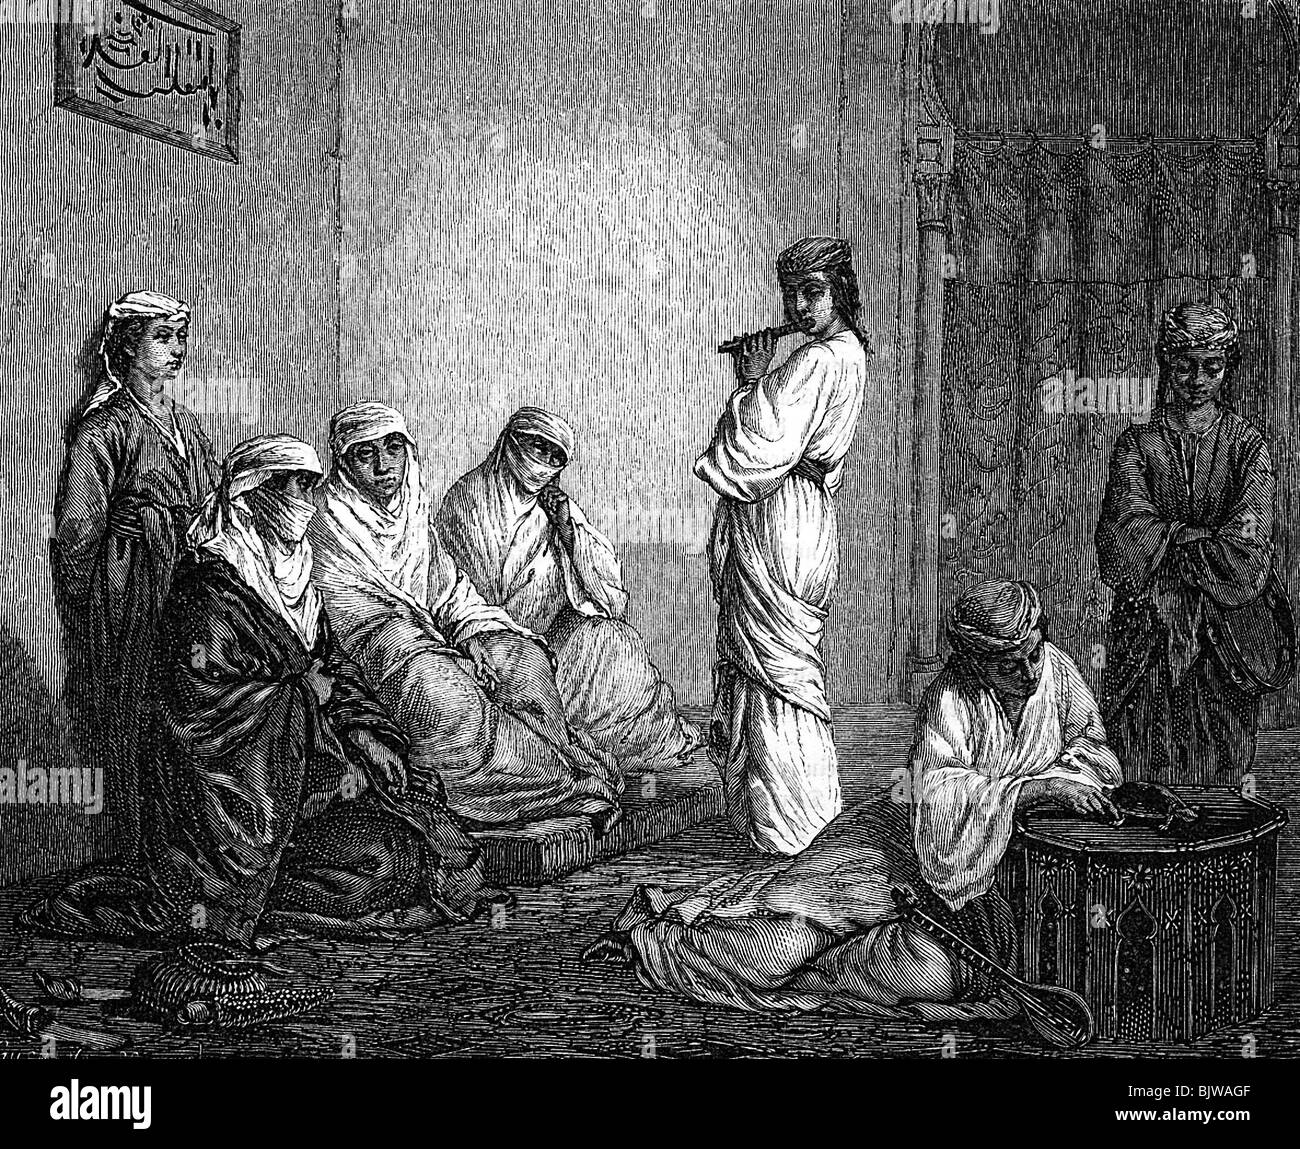 Persone, donne, harem a Istanbul, incisione del legno dopo il disegno, 1870, Foto Stock